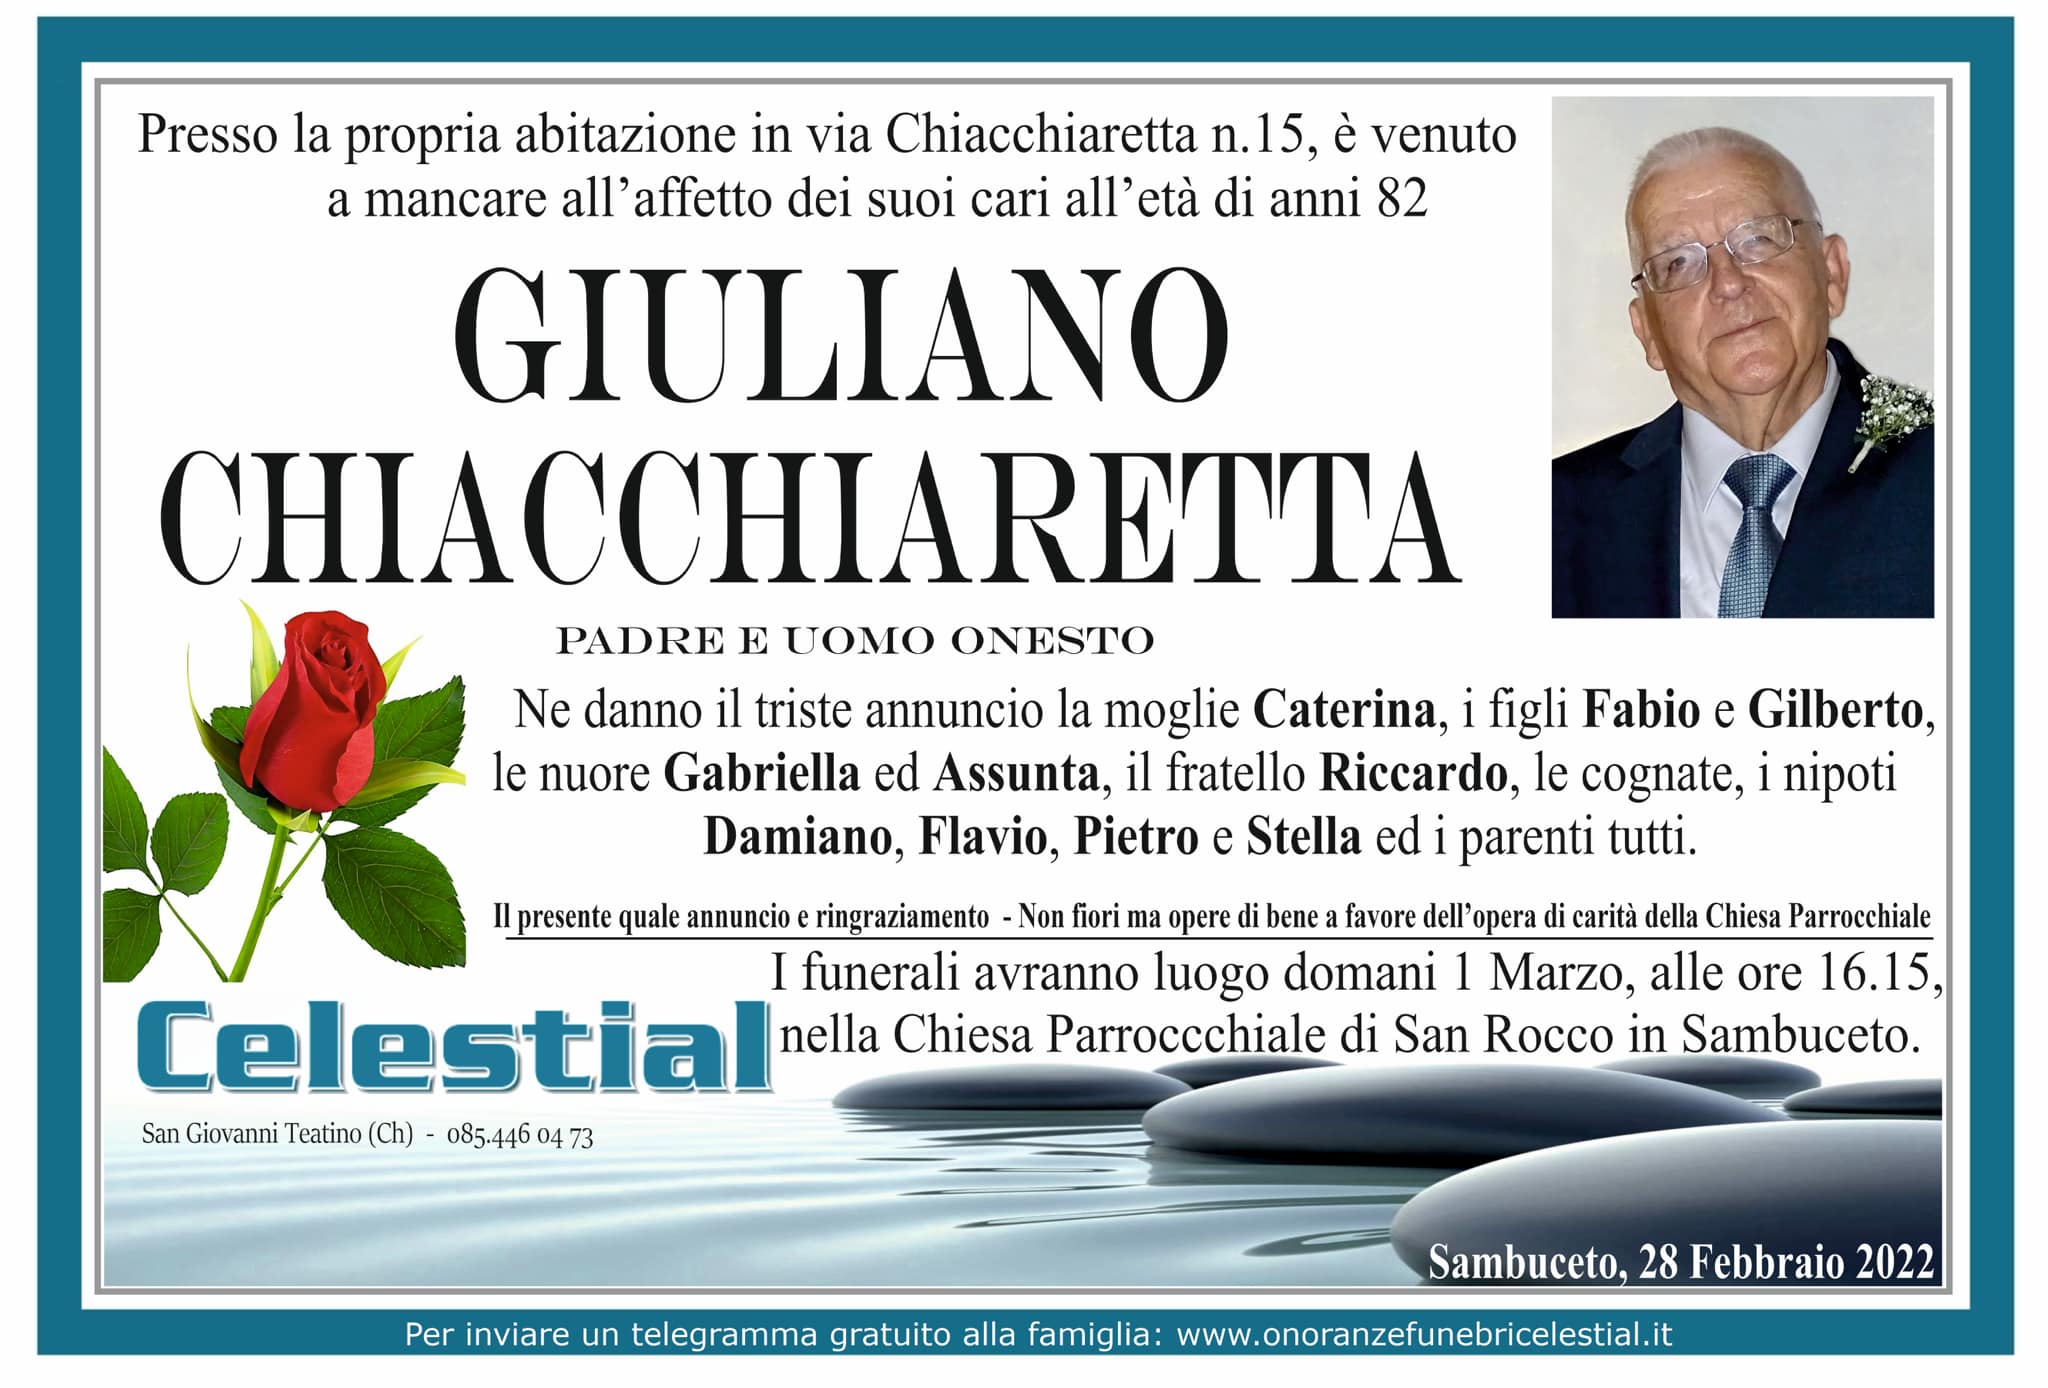 Giuliano Chiacchiaretta